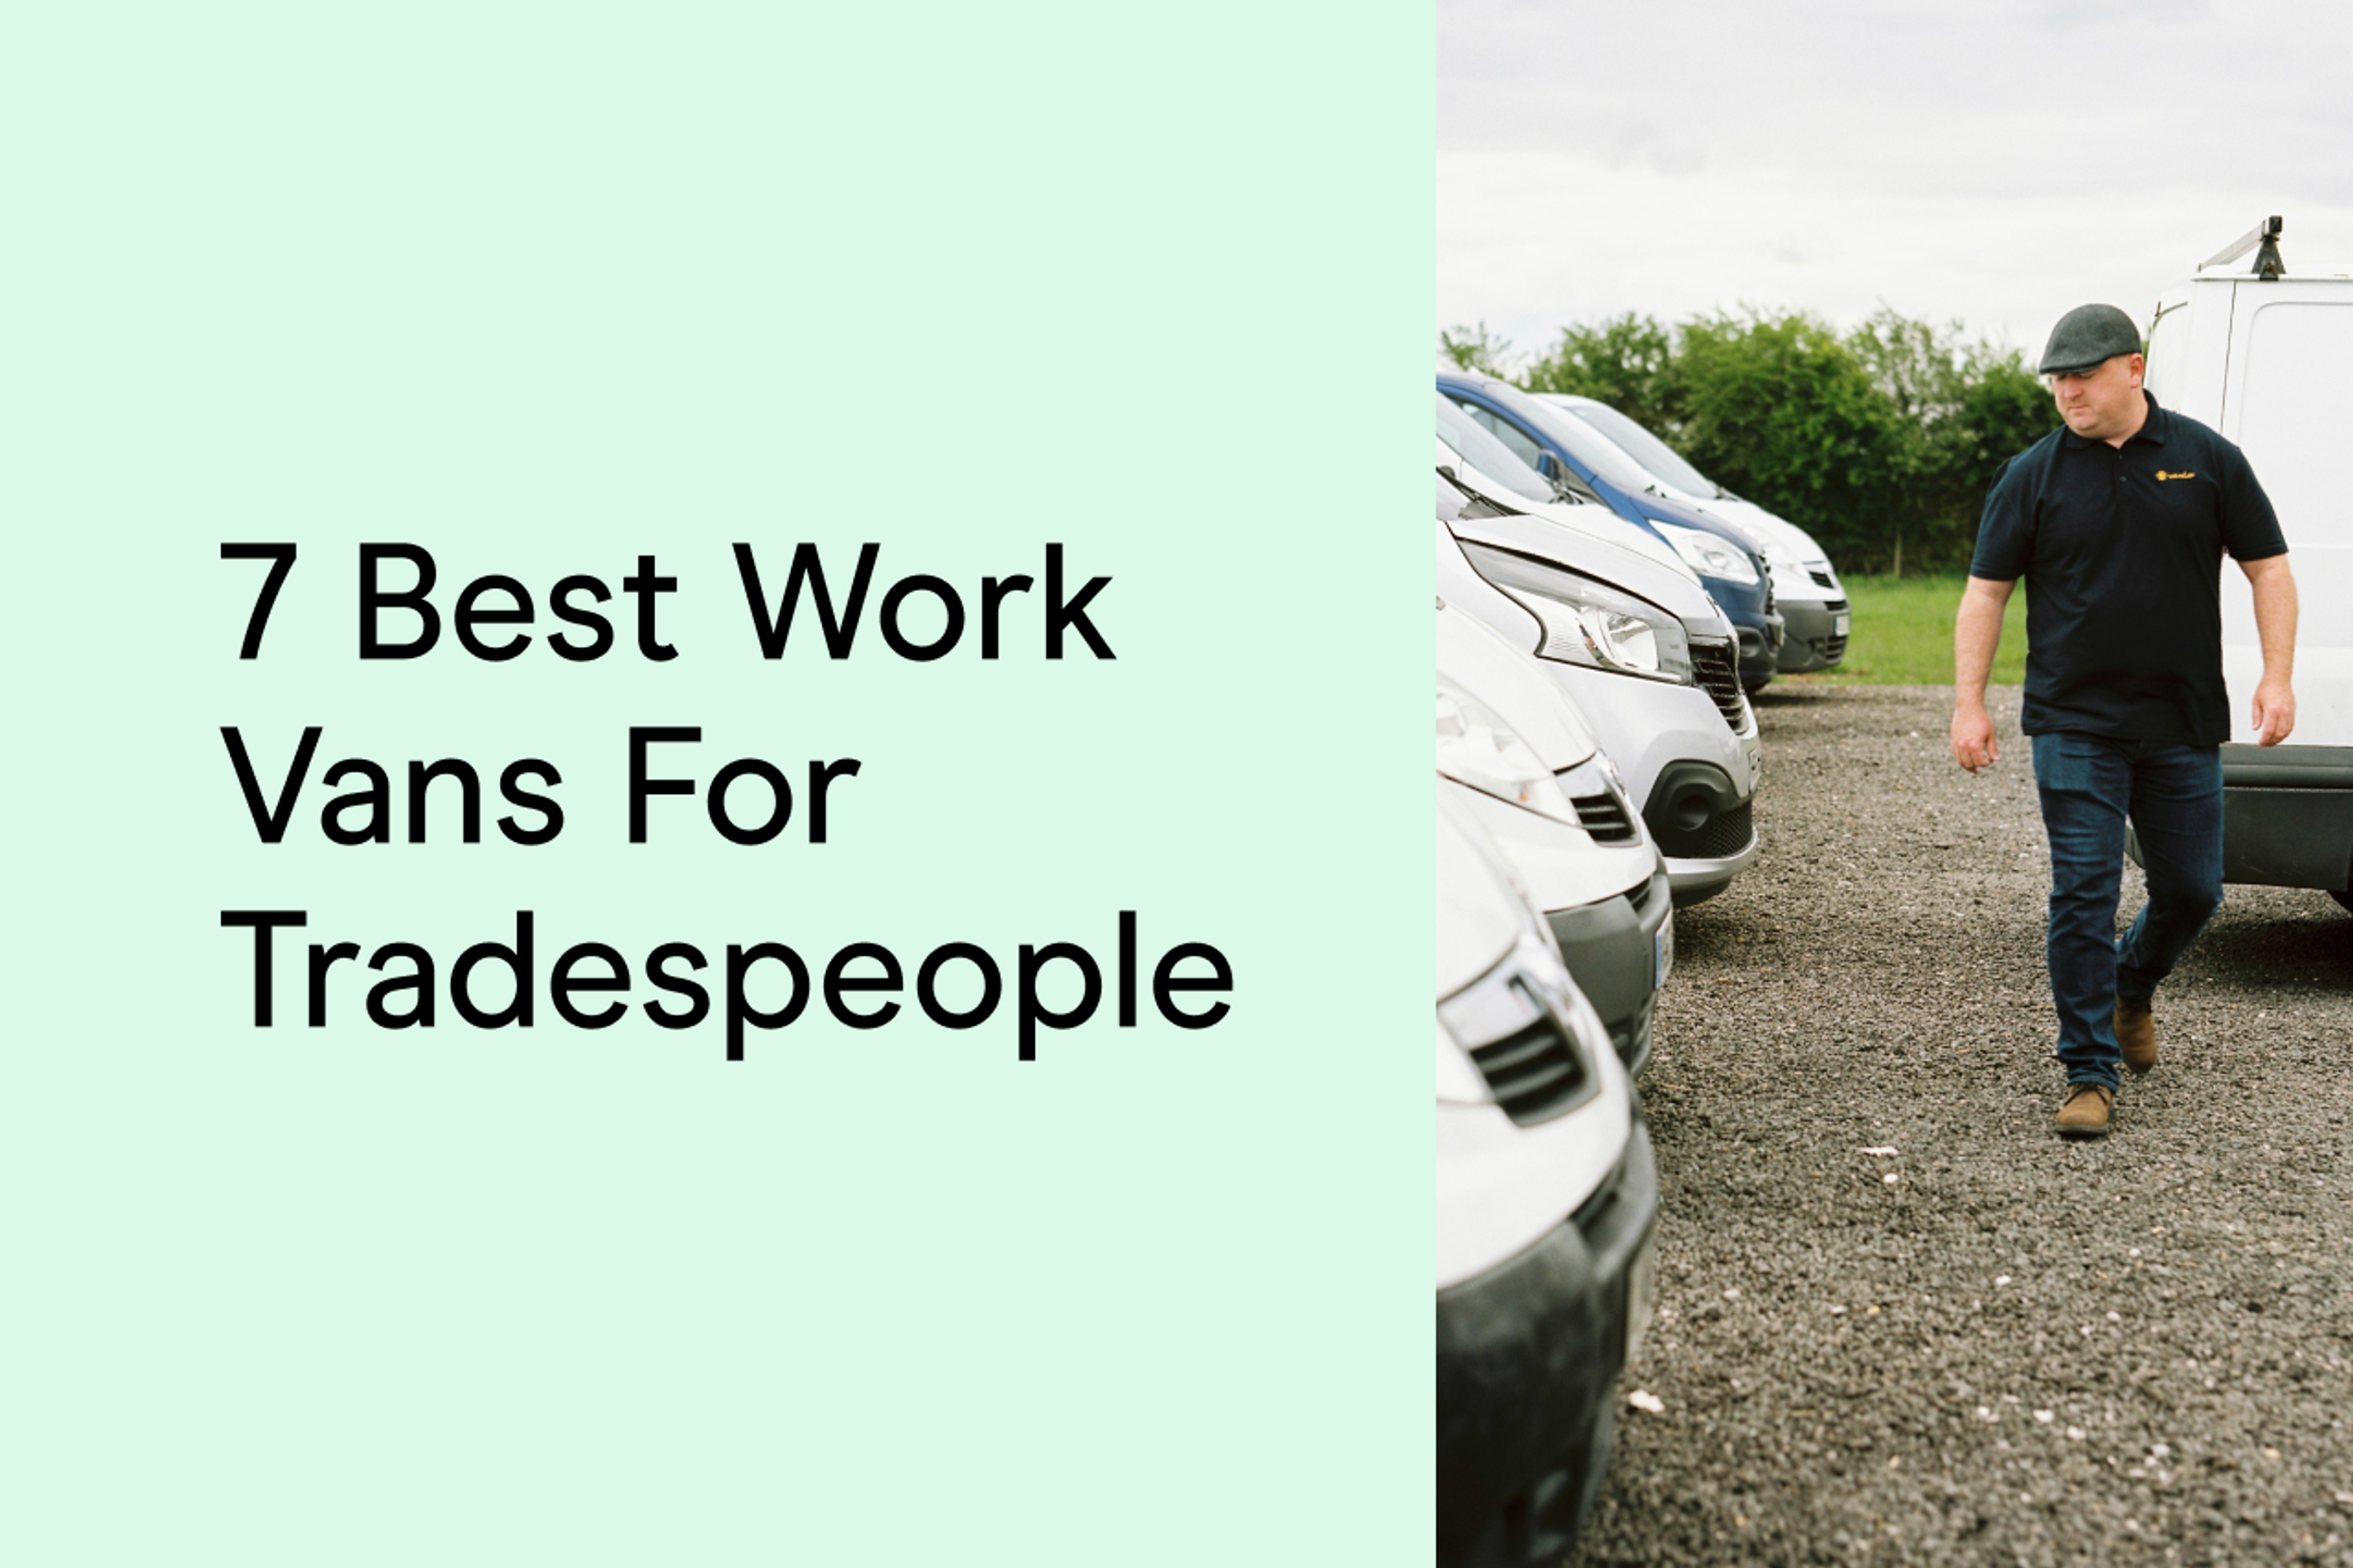 7 best work vans for tradespeople